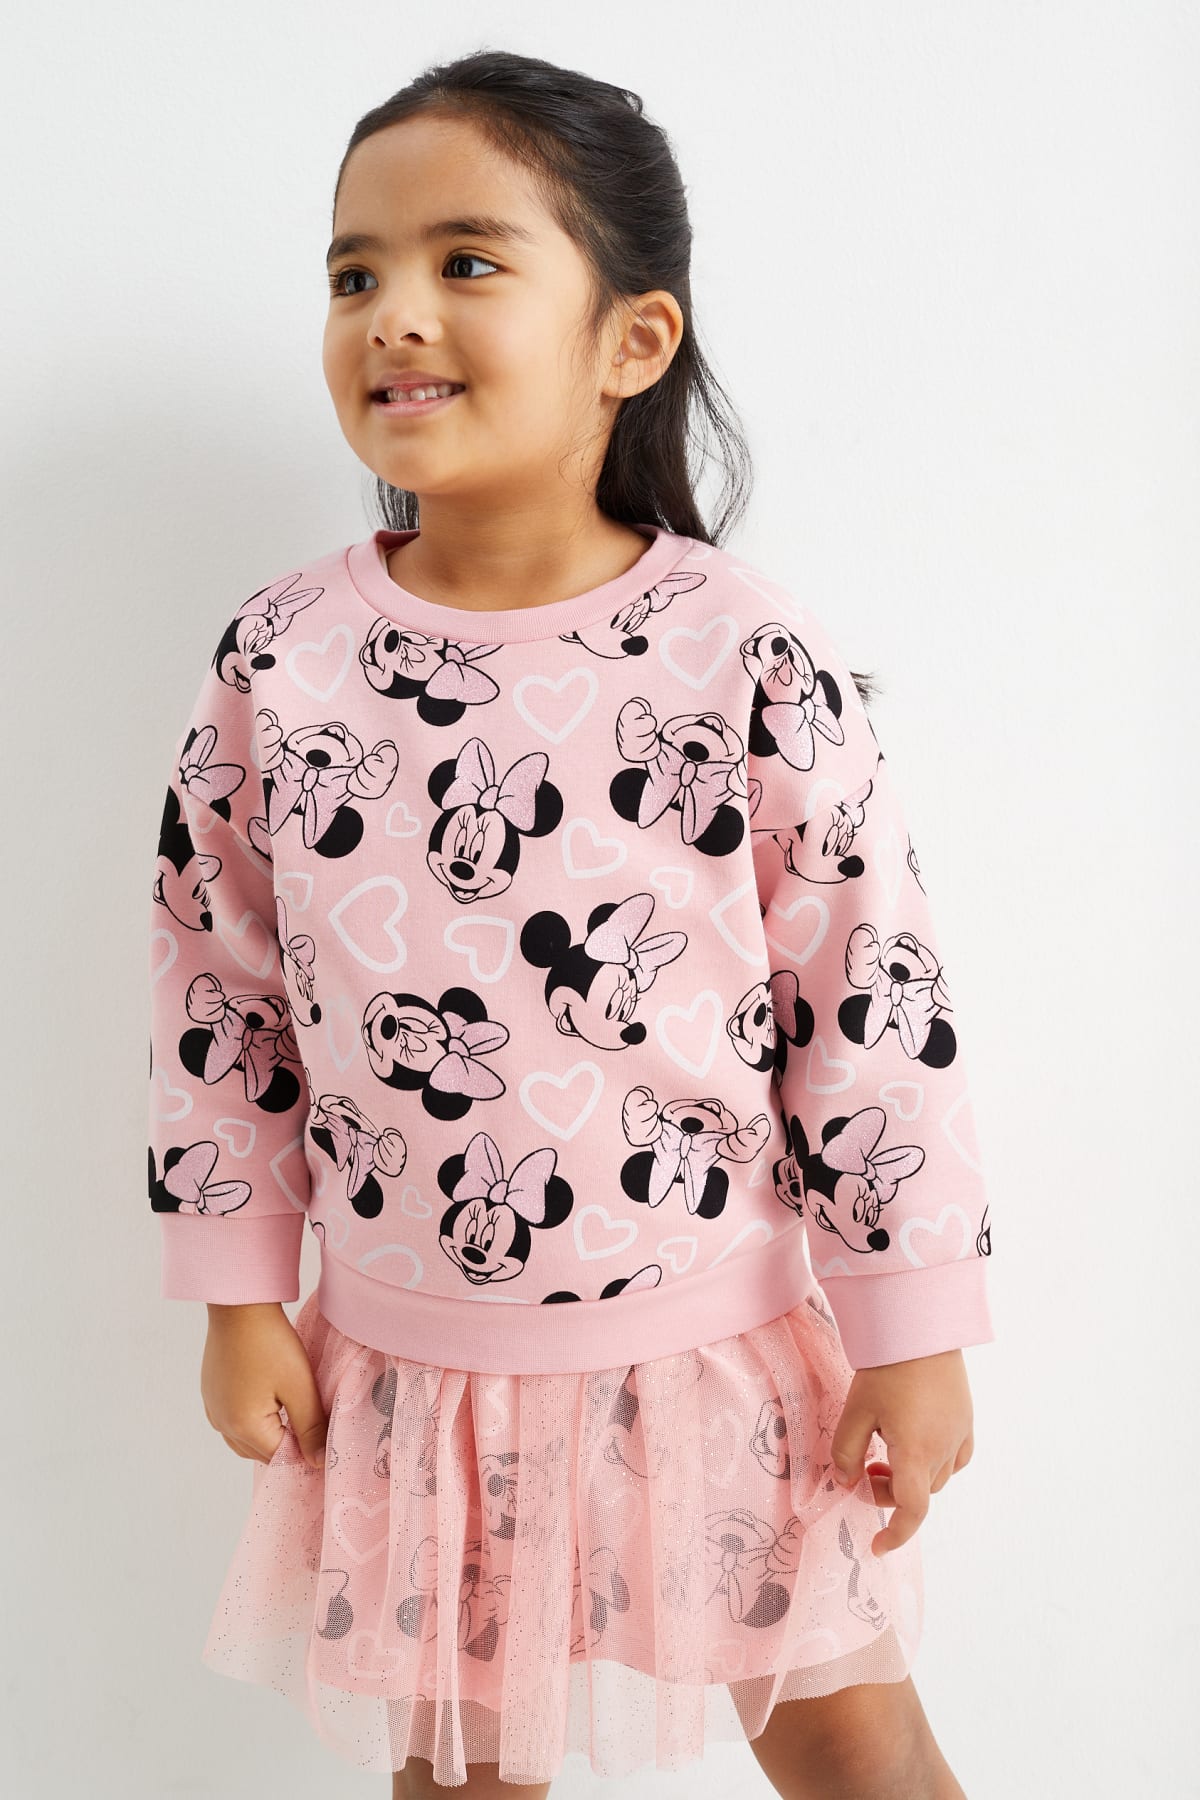 Kinder Bekleidung mit Minnie online kaufen | C&A Online-Shop